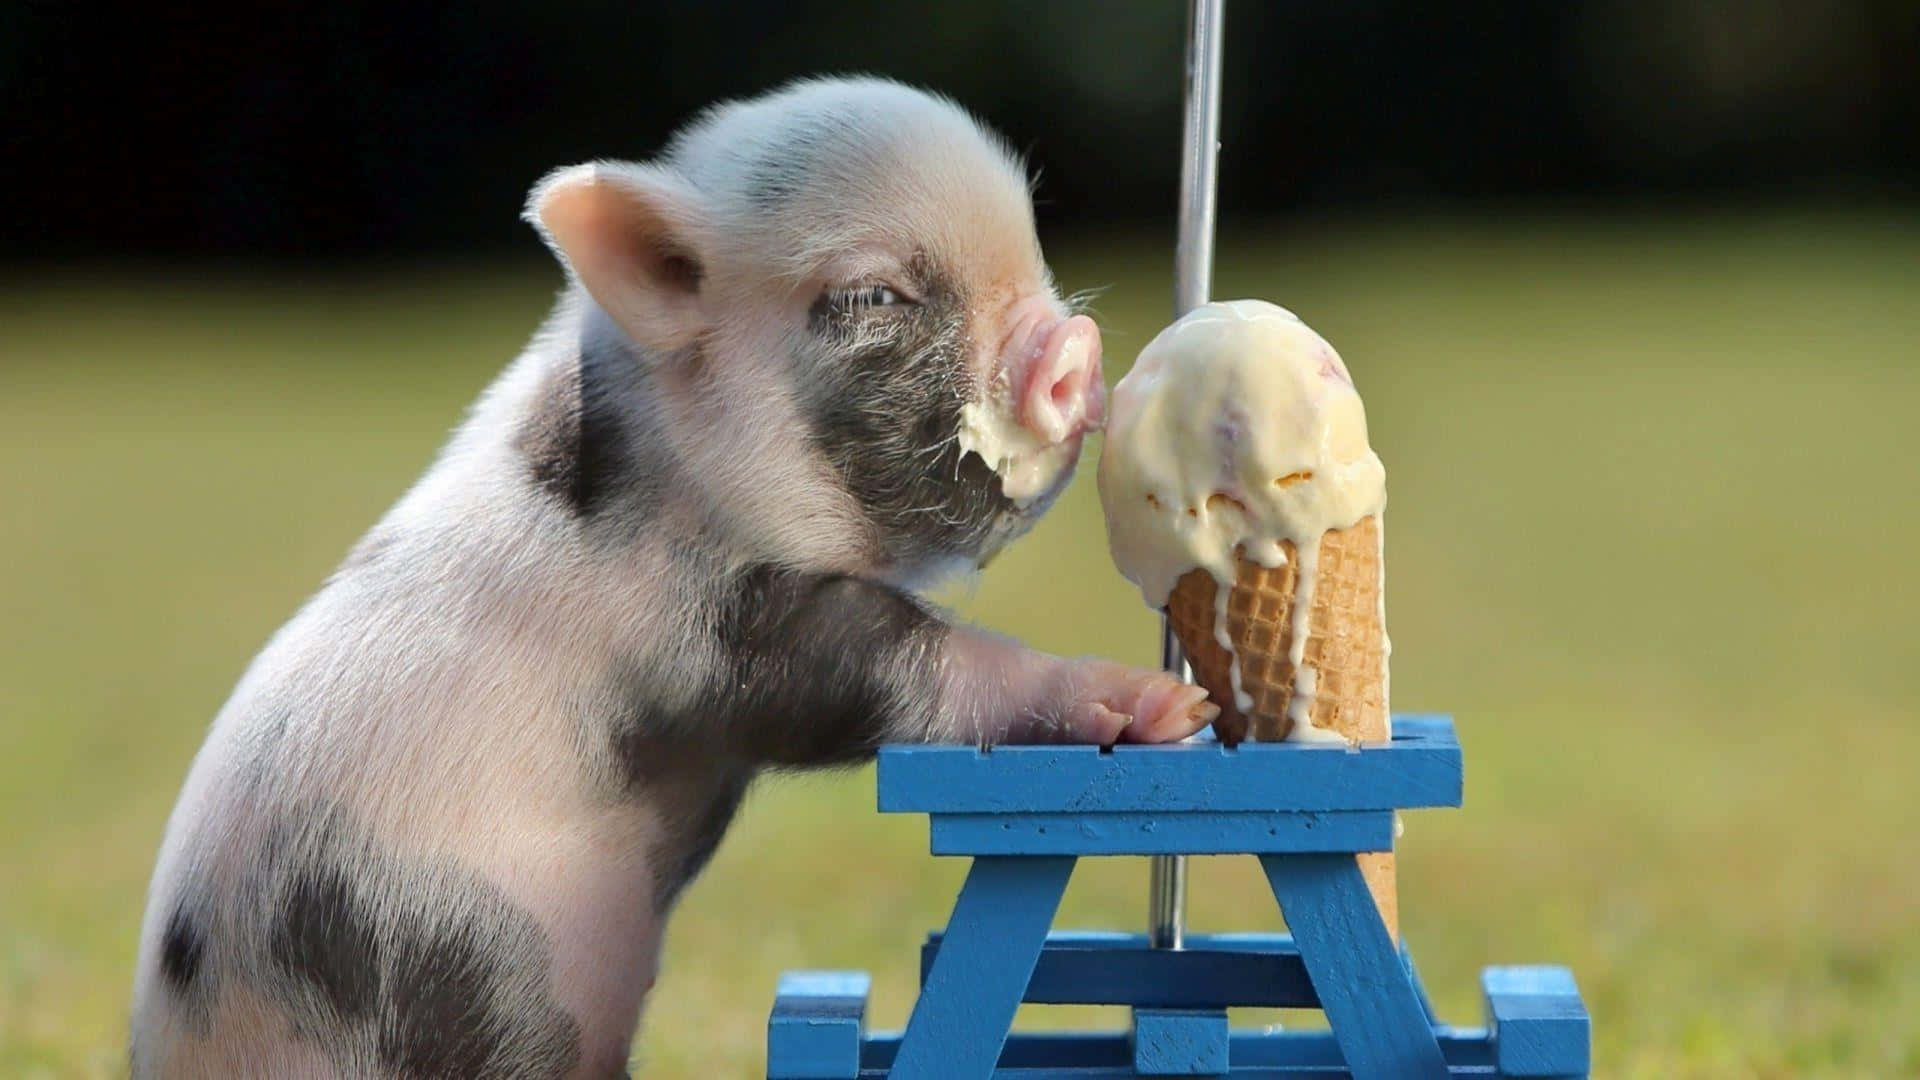 Schweinchenbilder (for Cute Pig Pictures)